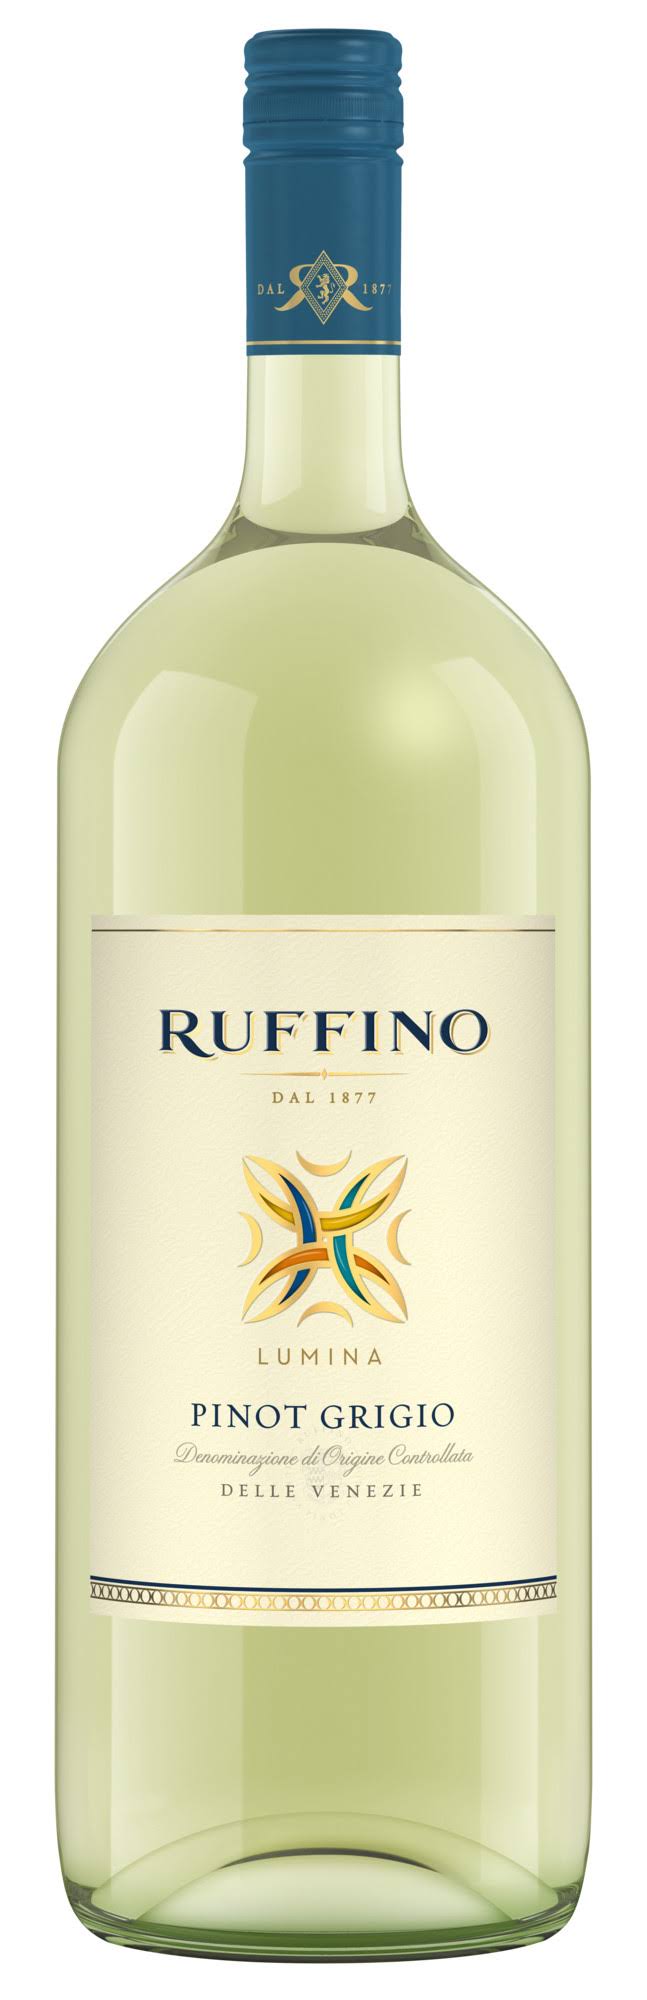 Ruffino Lumina Pinot Grigio - Italy